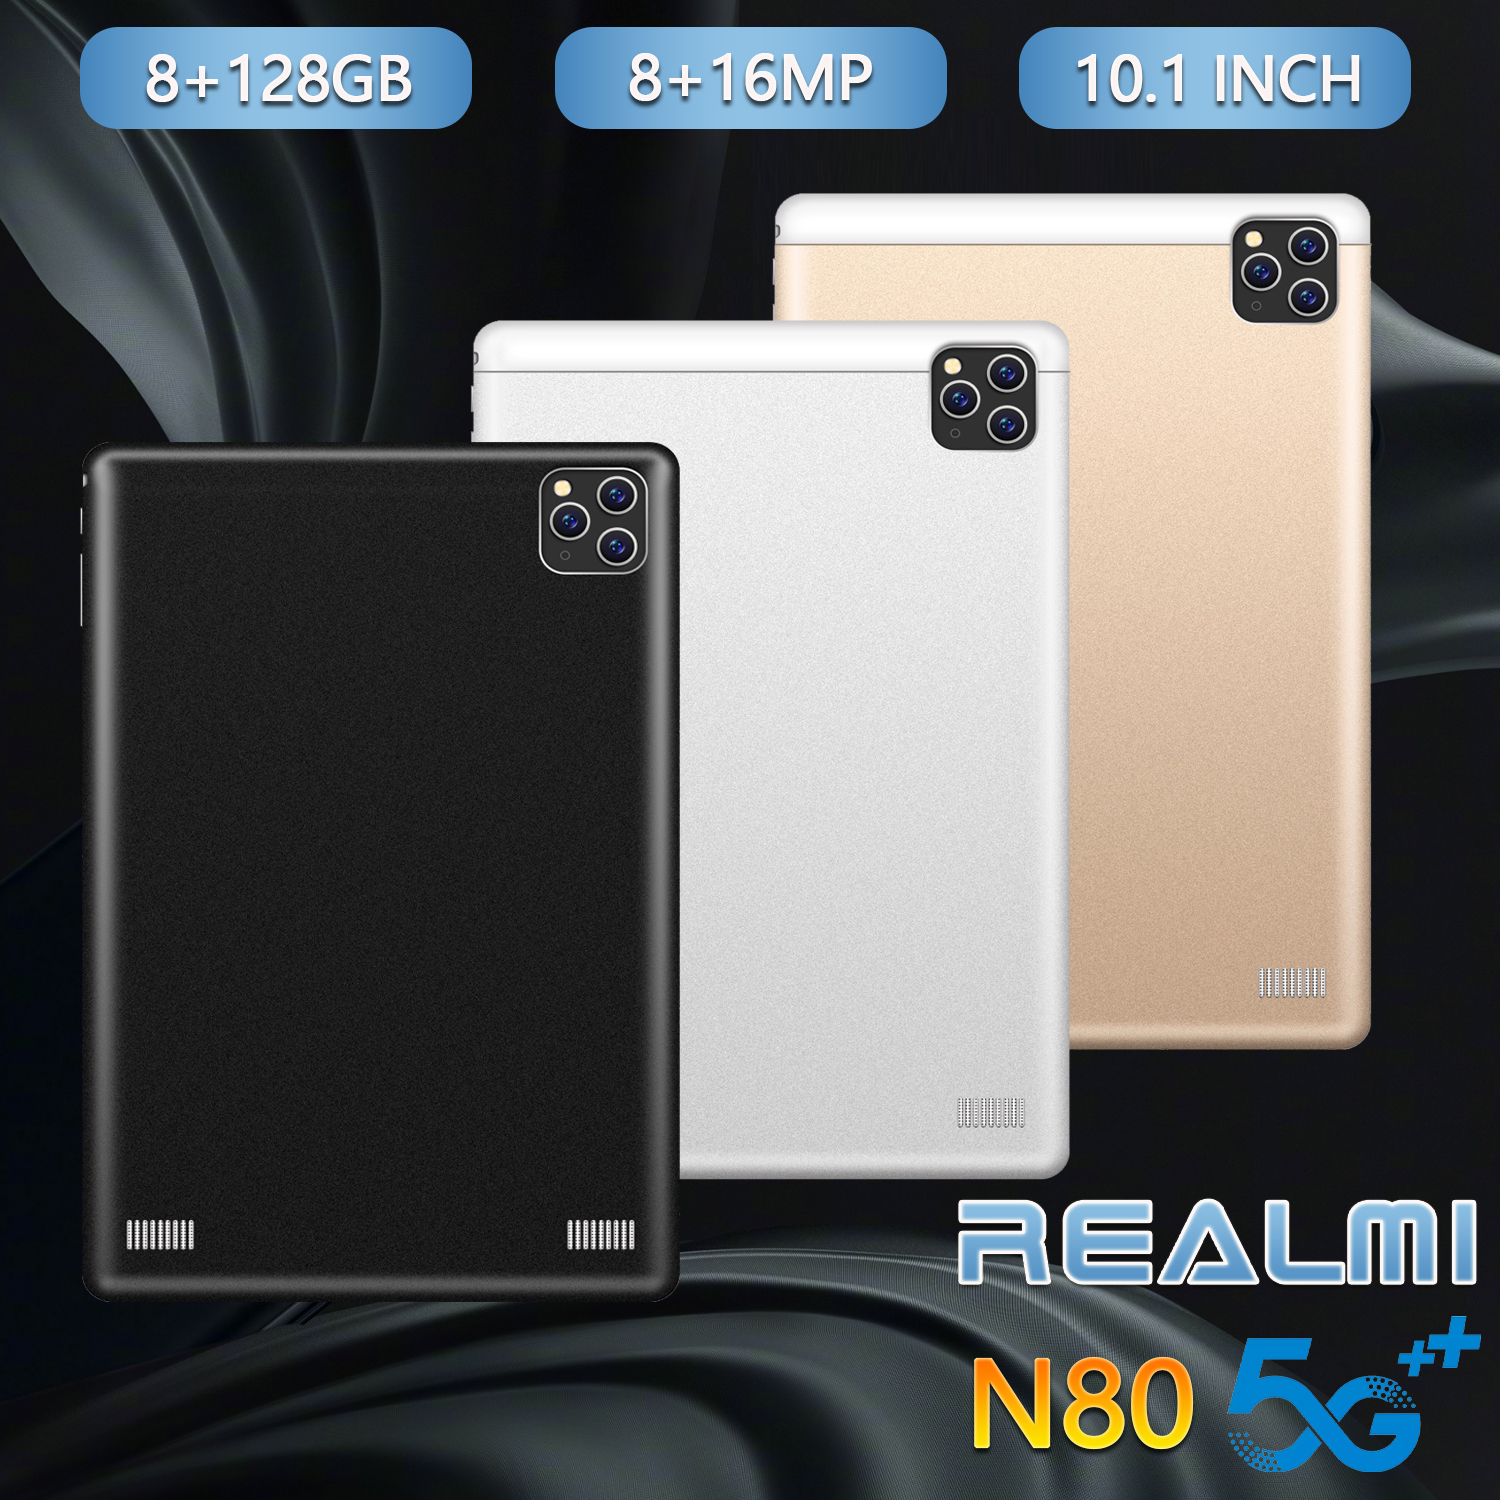 [พร้อมส่] ศูนย์ไทย Realmi แท็บเล็ต แท็บเล็ตขนาดหน้าจอHDขนาดใหญ่10.1 นิ้ว (8GB/128GB) tablet สินค้าใหม่ 2020 แท็บเล็ต แบตเตอรี่ความจุสูง 8800 mAh อินเทอร์เน็ต 4G, WIFI (ประกันศูนย์ Realmi ประเทศไทย) ระบบปฎิบัติการAndroid 8.1 รองรับภาษาไทย พร้อมส่ง!